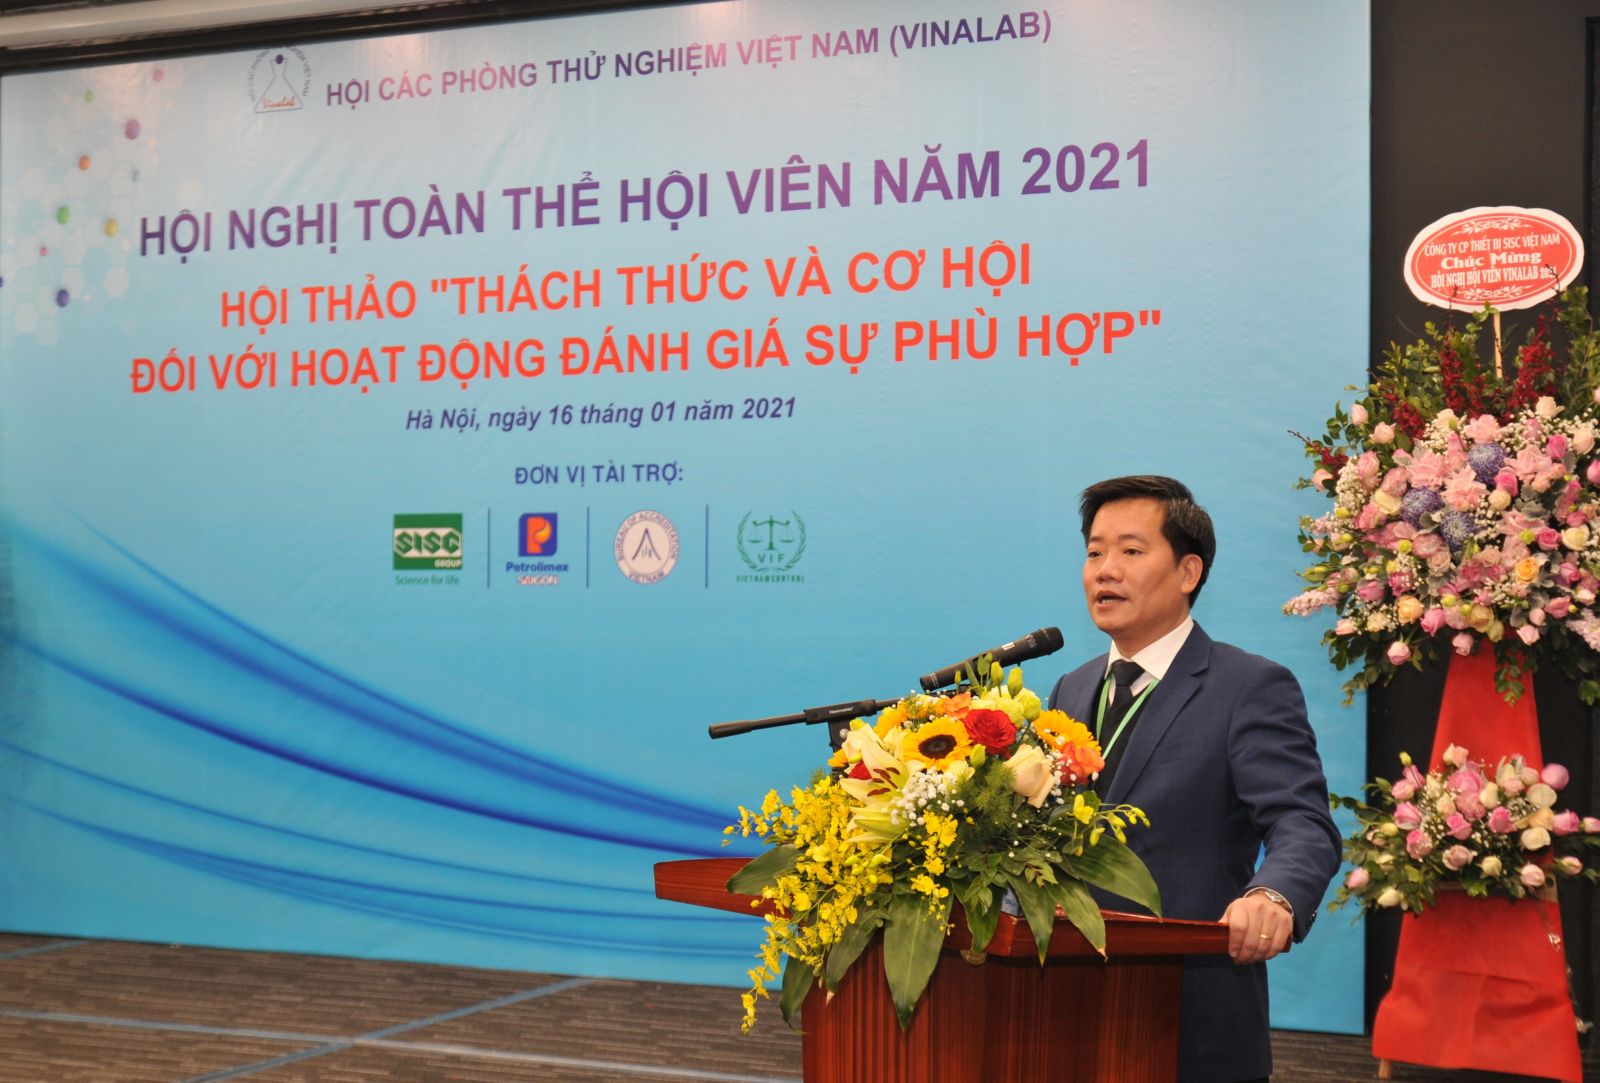 Chủ tịch VinaLAB - TS. Nguyễn Hoàng Linh phát biểu kết thúc chương trình hội nghị, hội thảo.